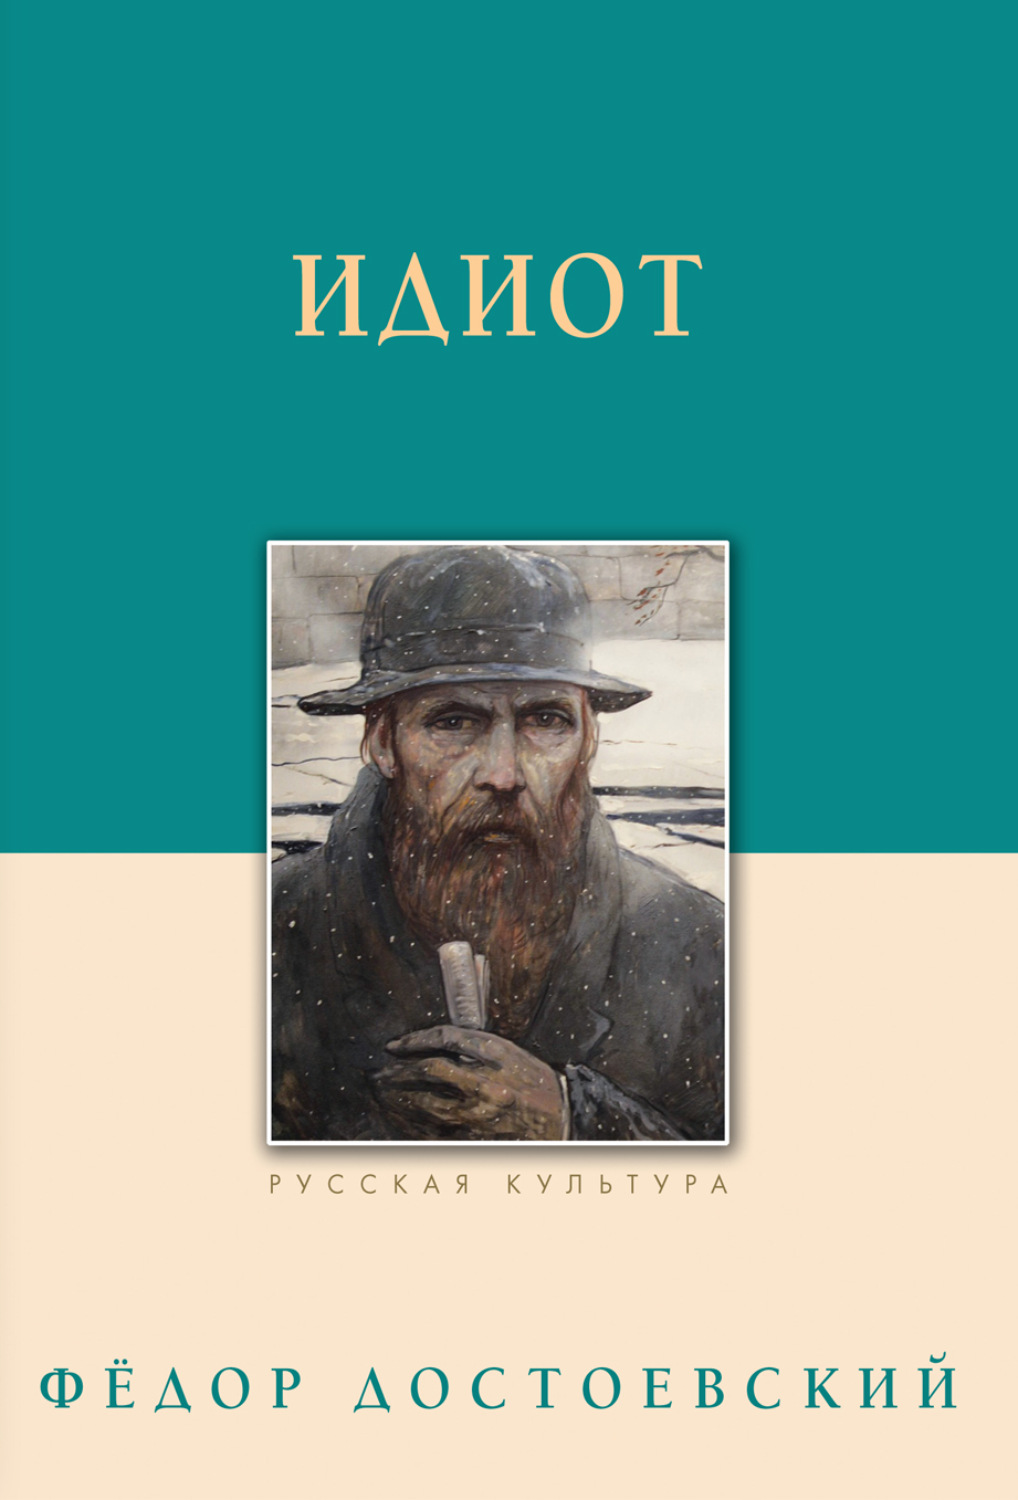 Федор Достоевский книга Идиот – скачать fb2, epub, pdf бесплатно ...